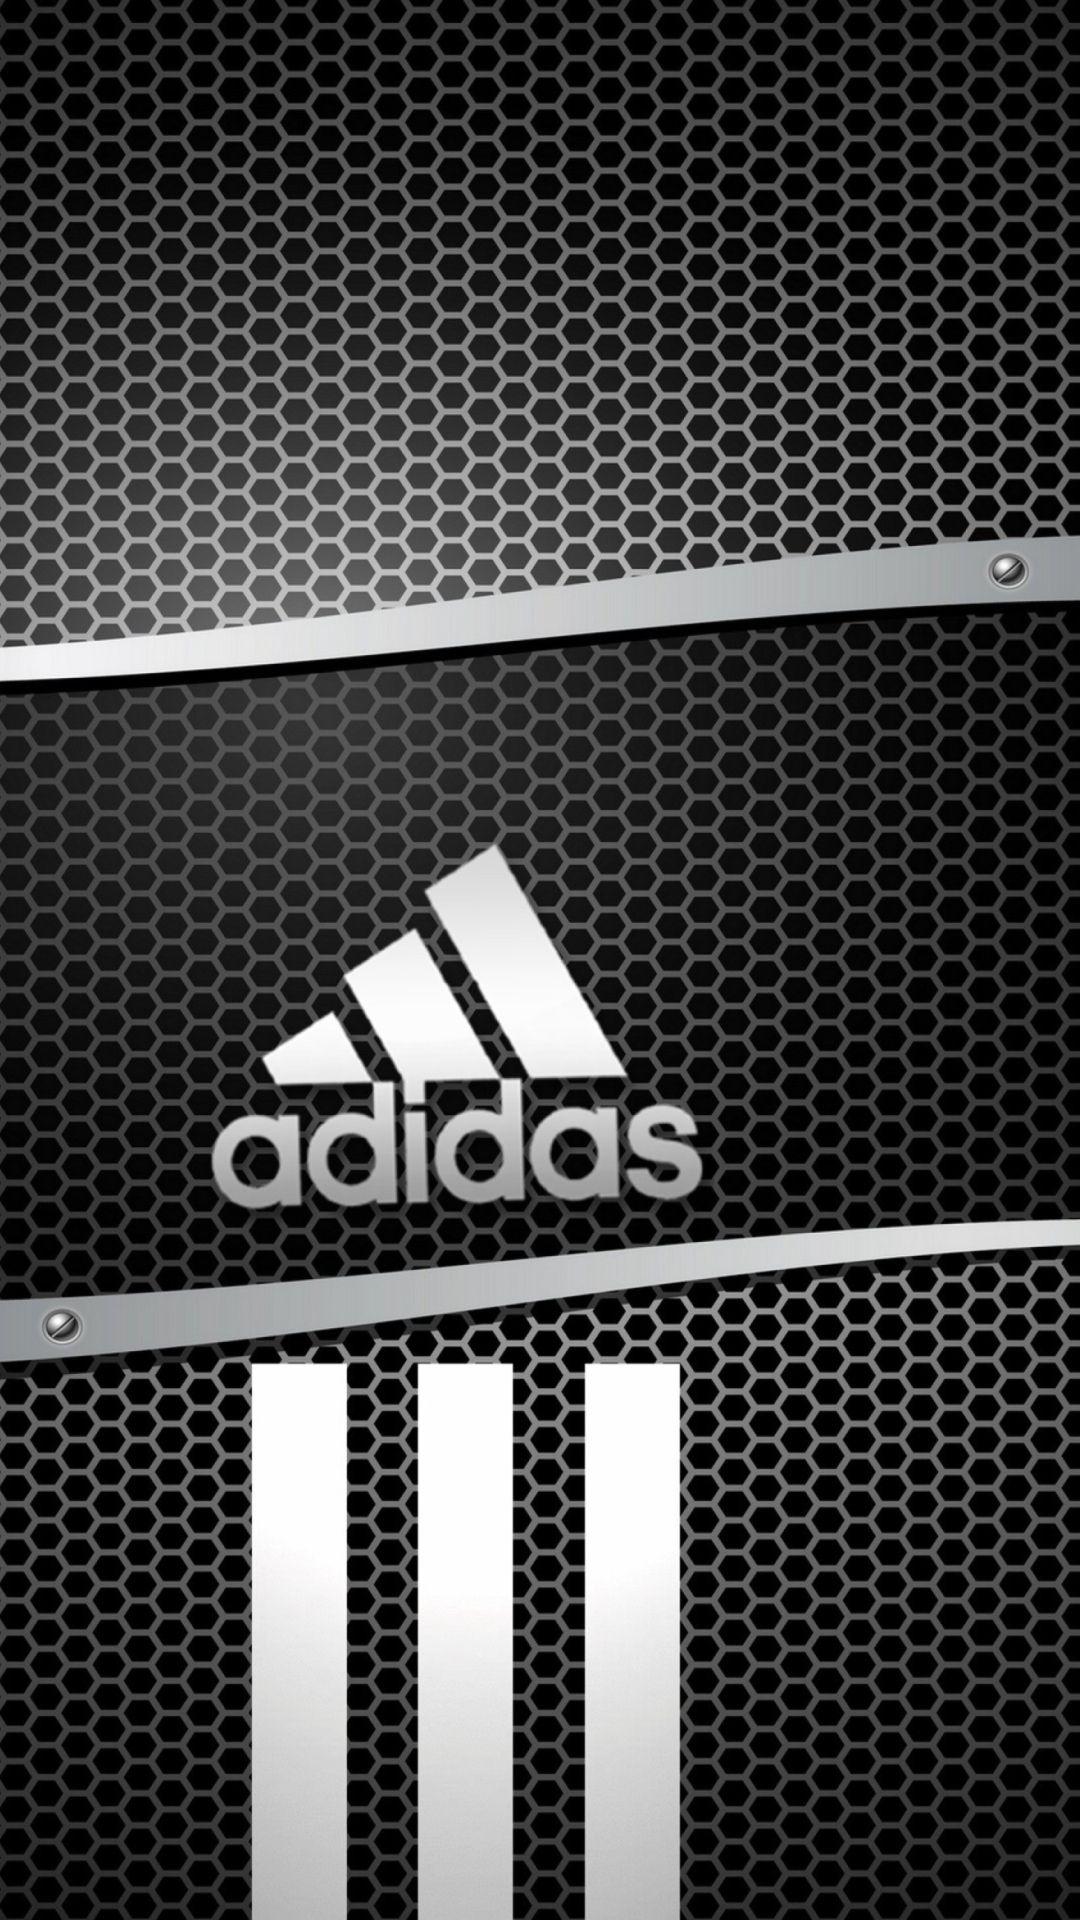 60 Hình nền Adidas đẹp nhất đơn giản cực nét chất lượng chuẩn HD